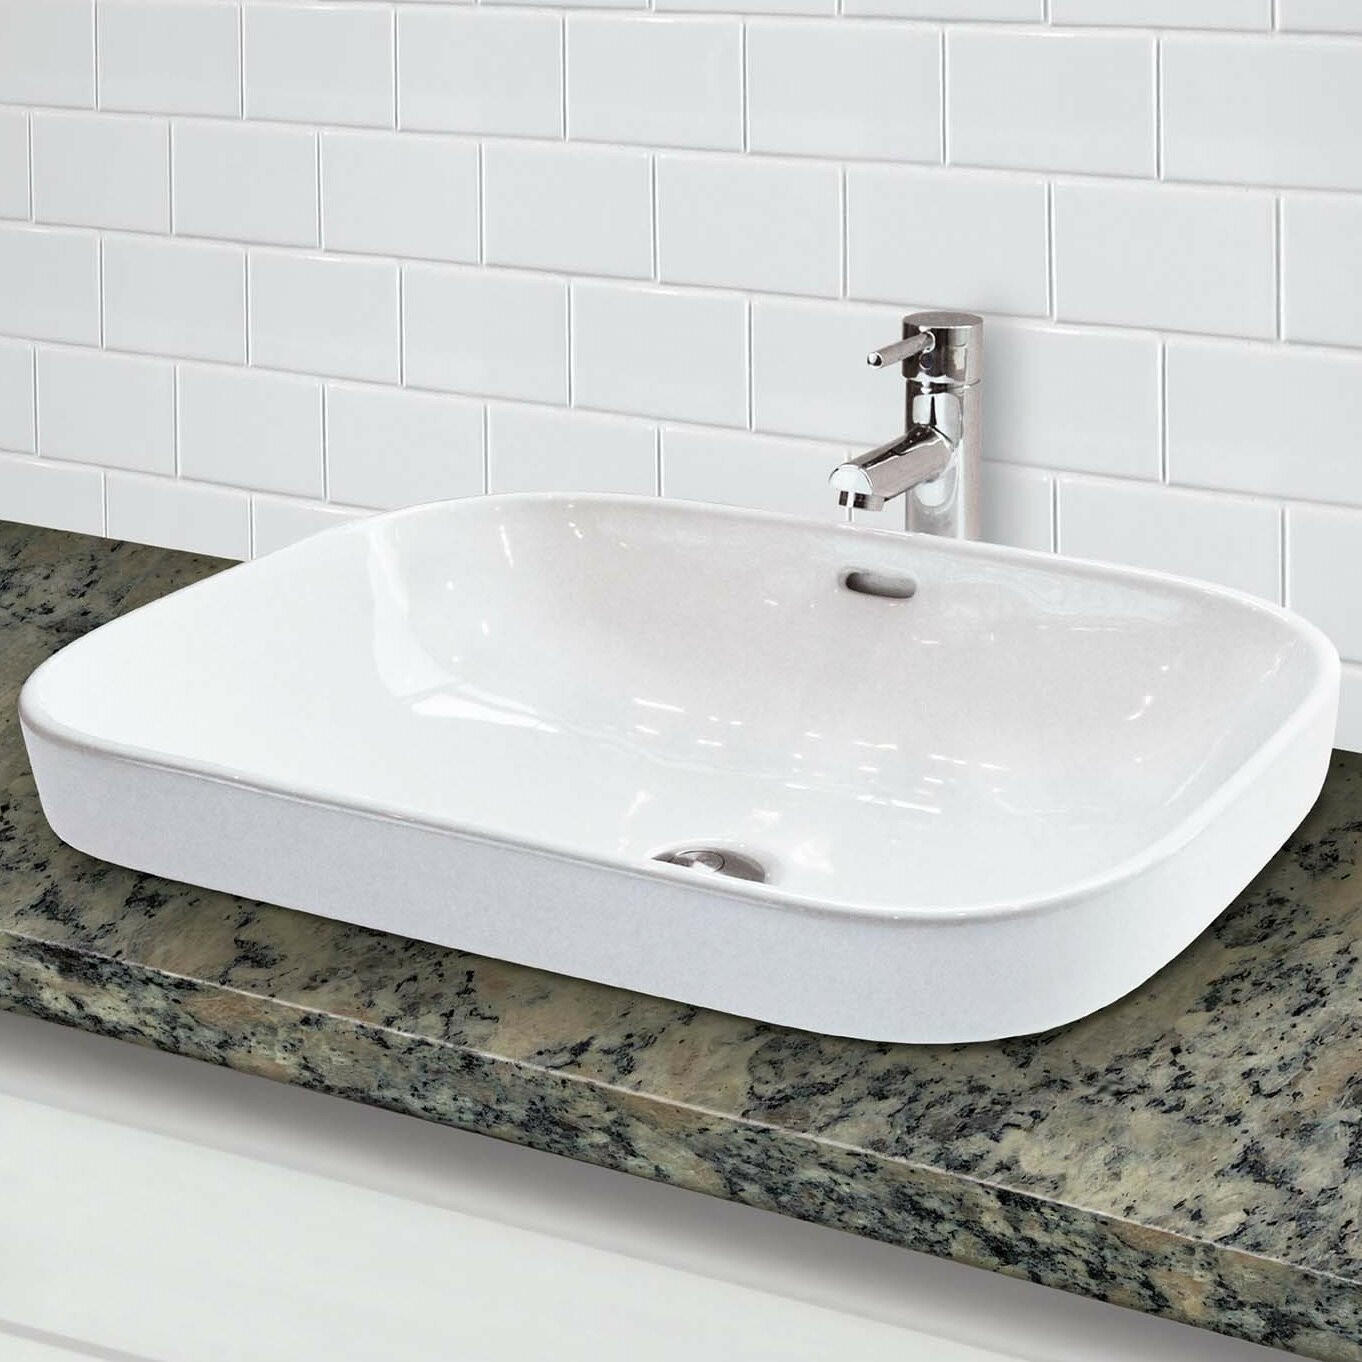 Semi Recessed Bathroom Sink
 DECOLAV Classically Redefined Rectangular Semi Recessed